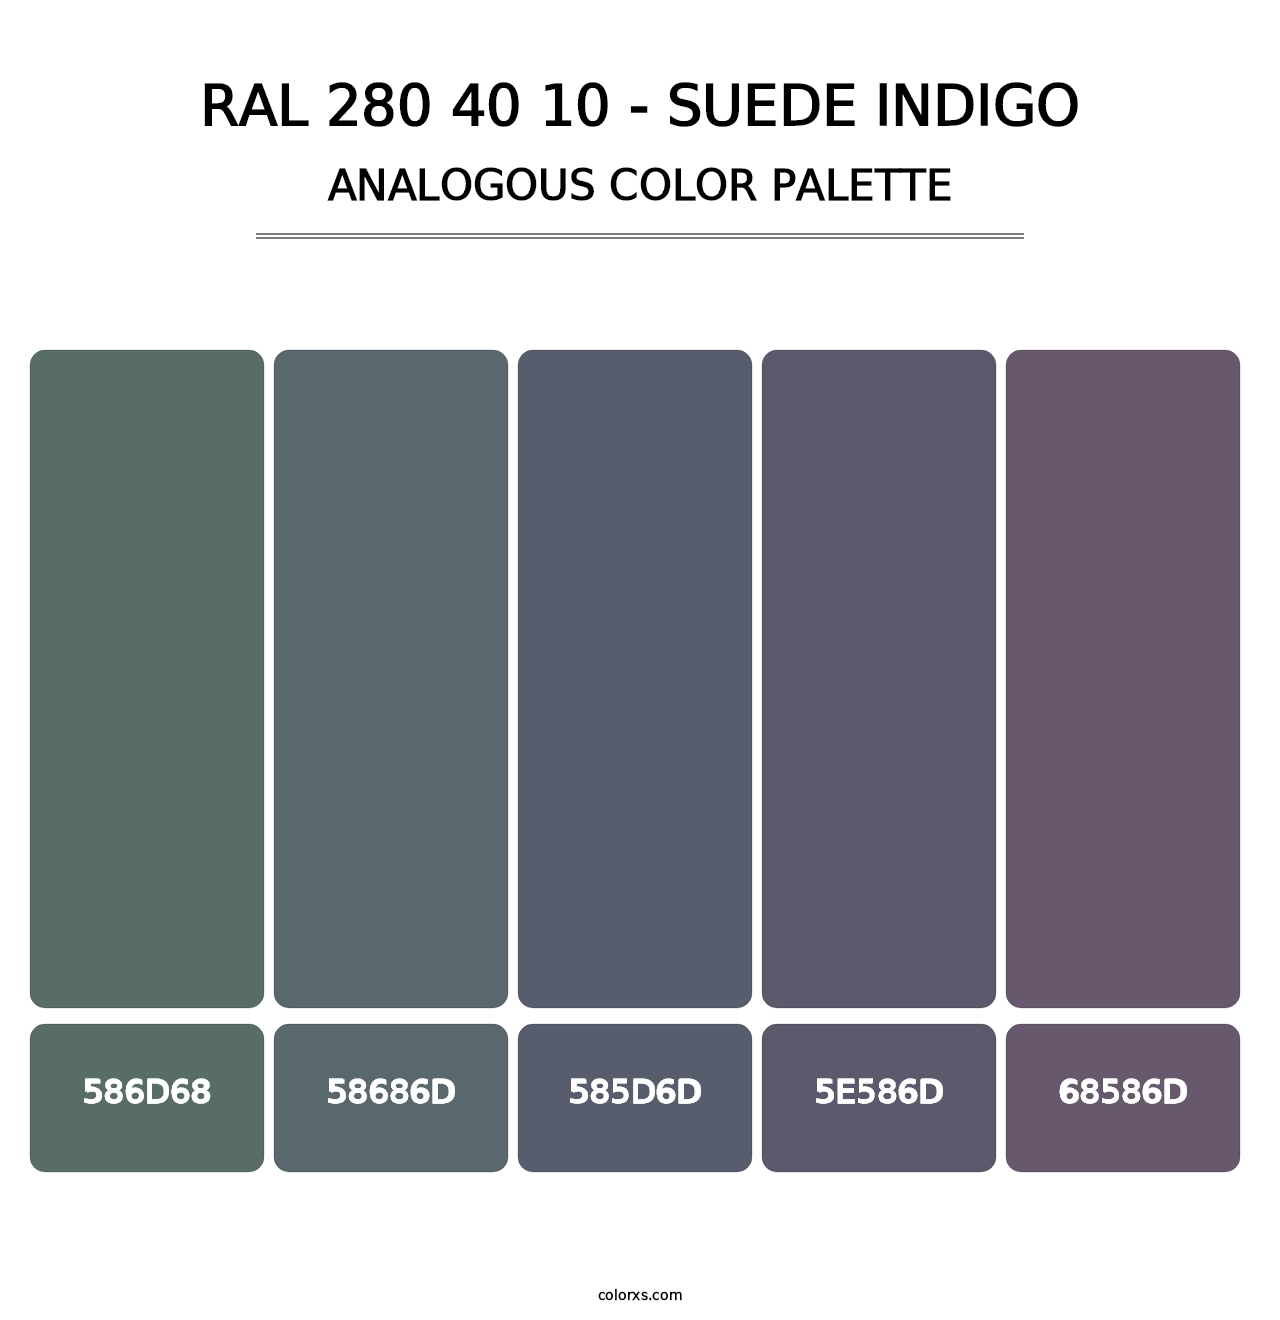 RAL 280 40 10 - Suede Indigo - Analogous Color Palette